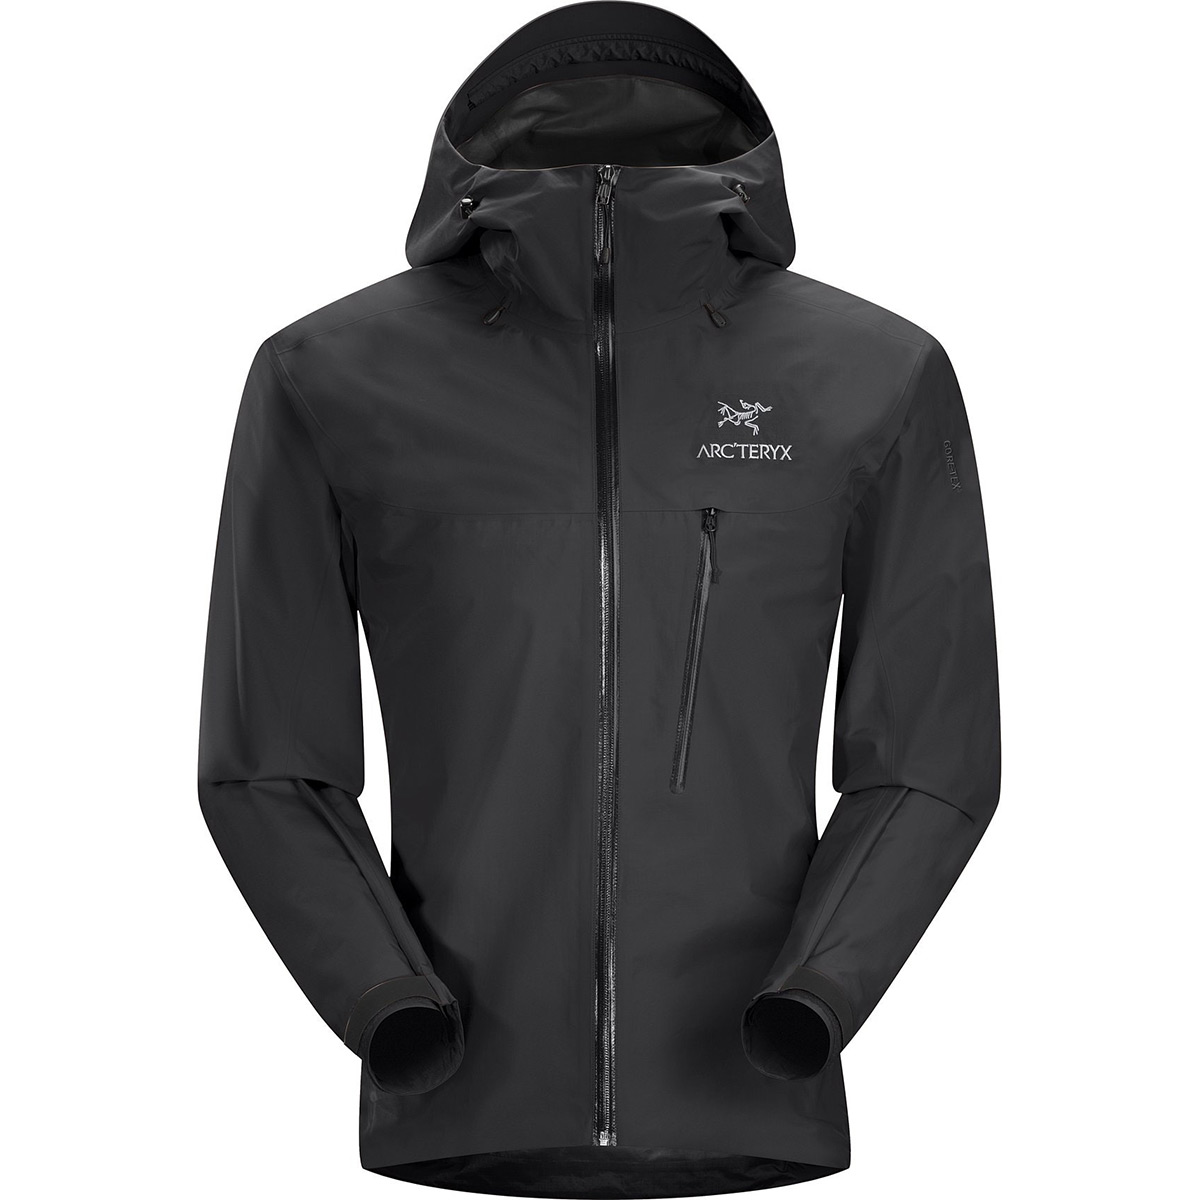 Alpha SL Jacket, men's, discontinued Fall 2018 model